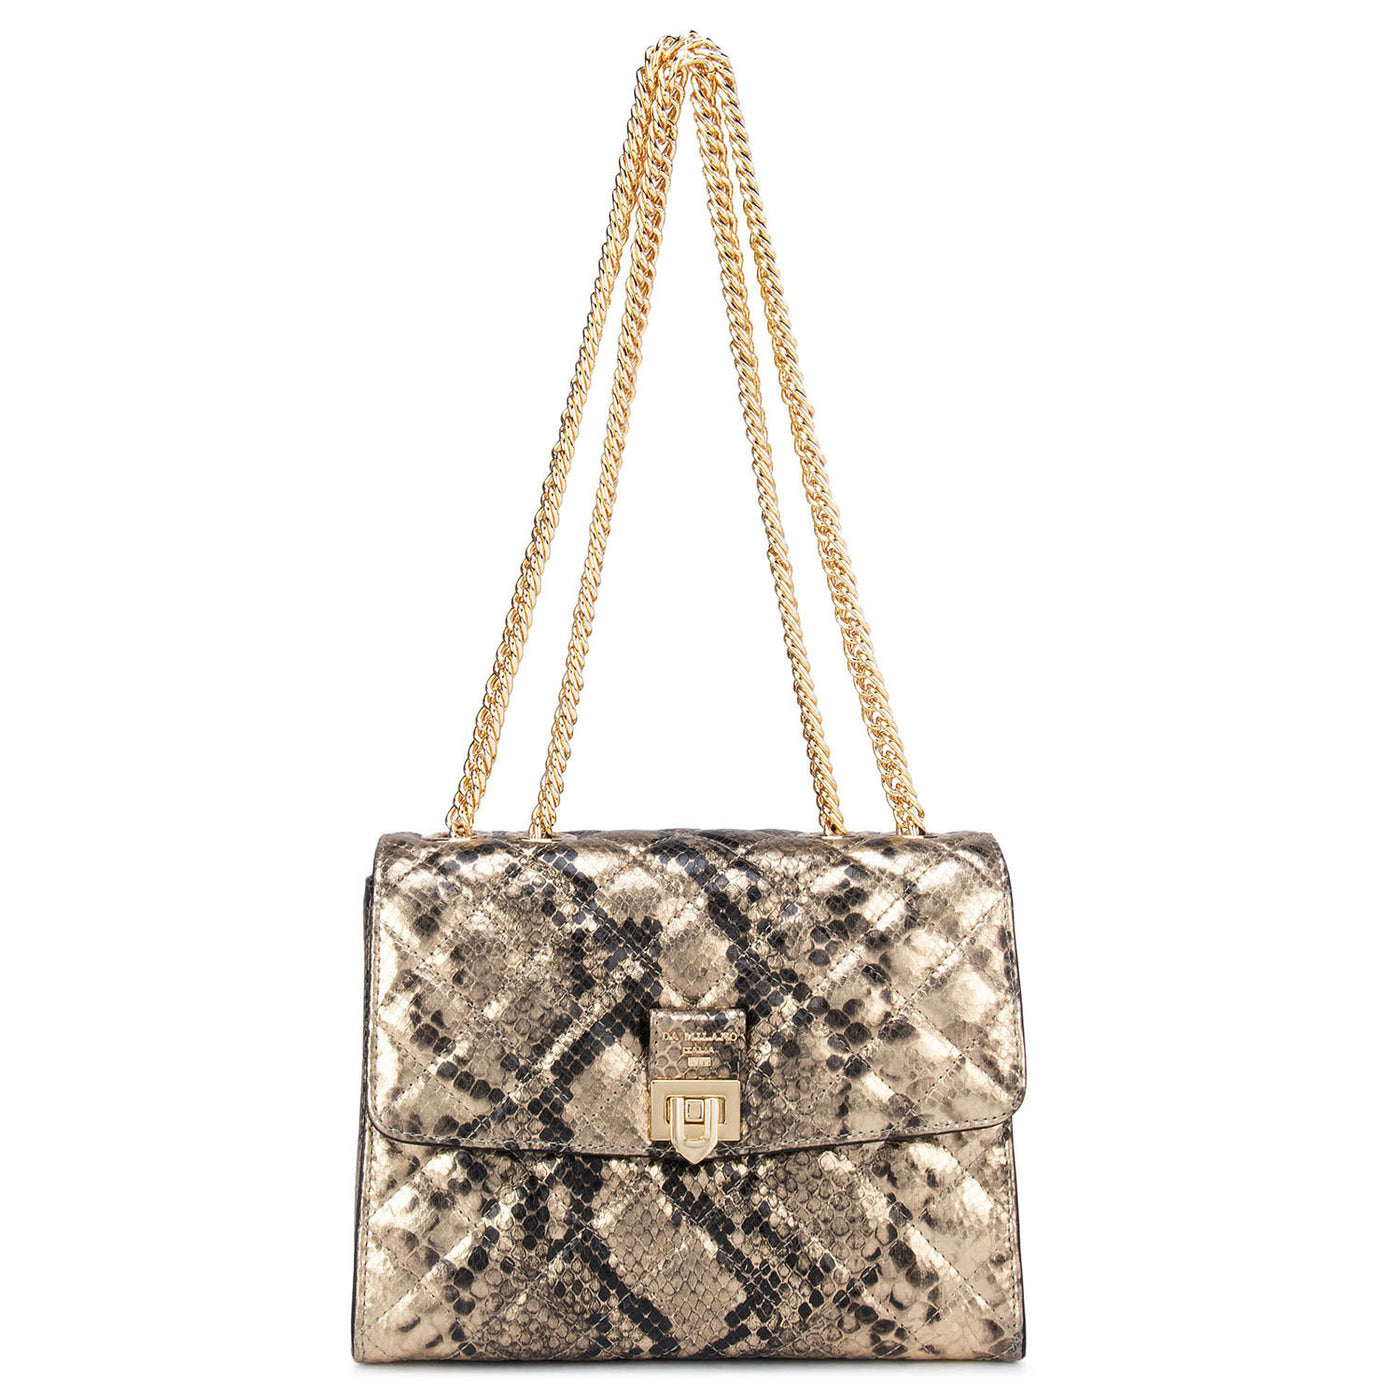 Gold & Black Snake Textured Sling Bag